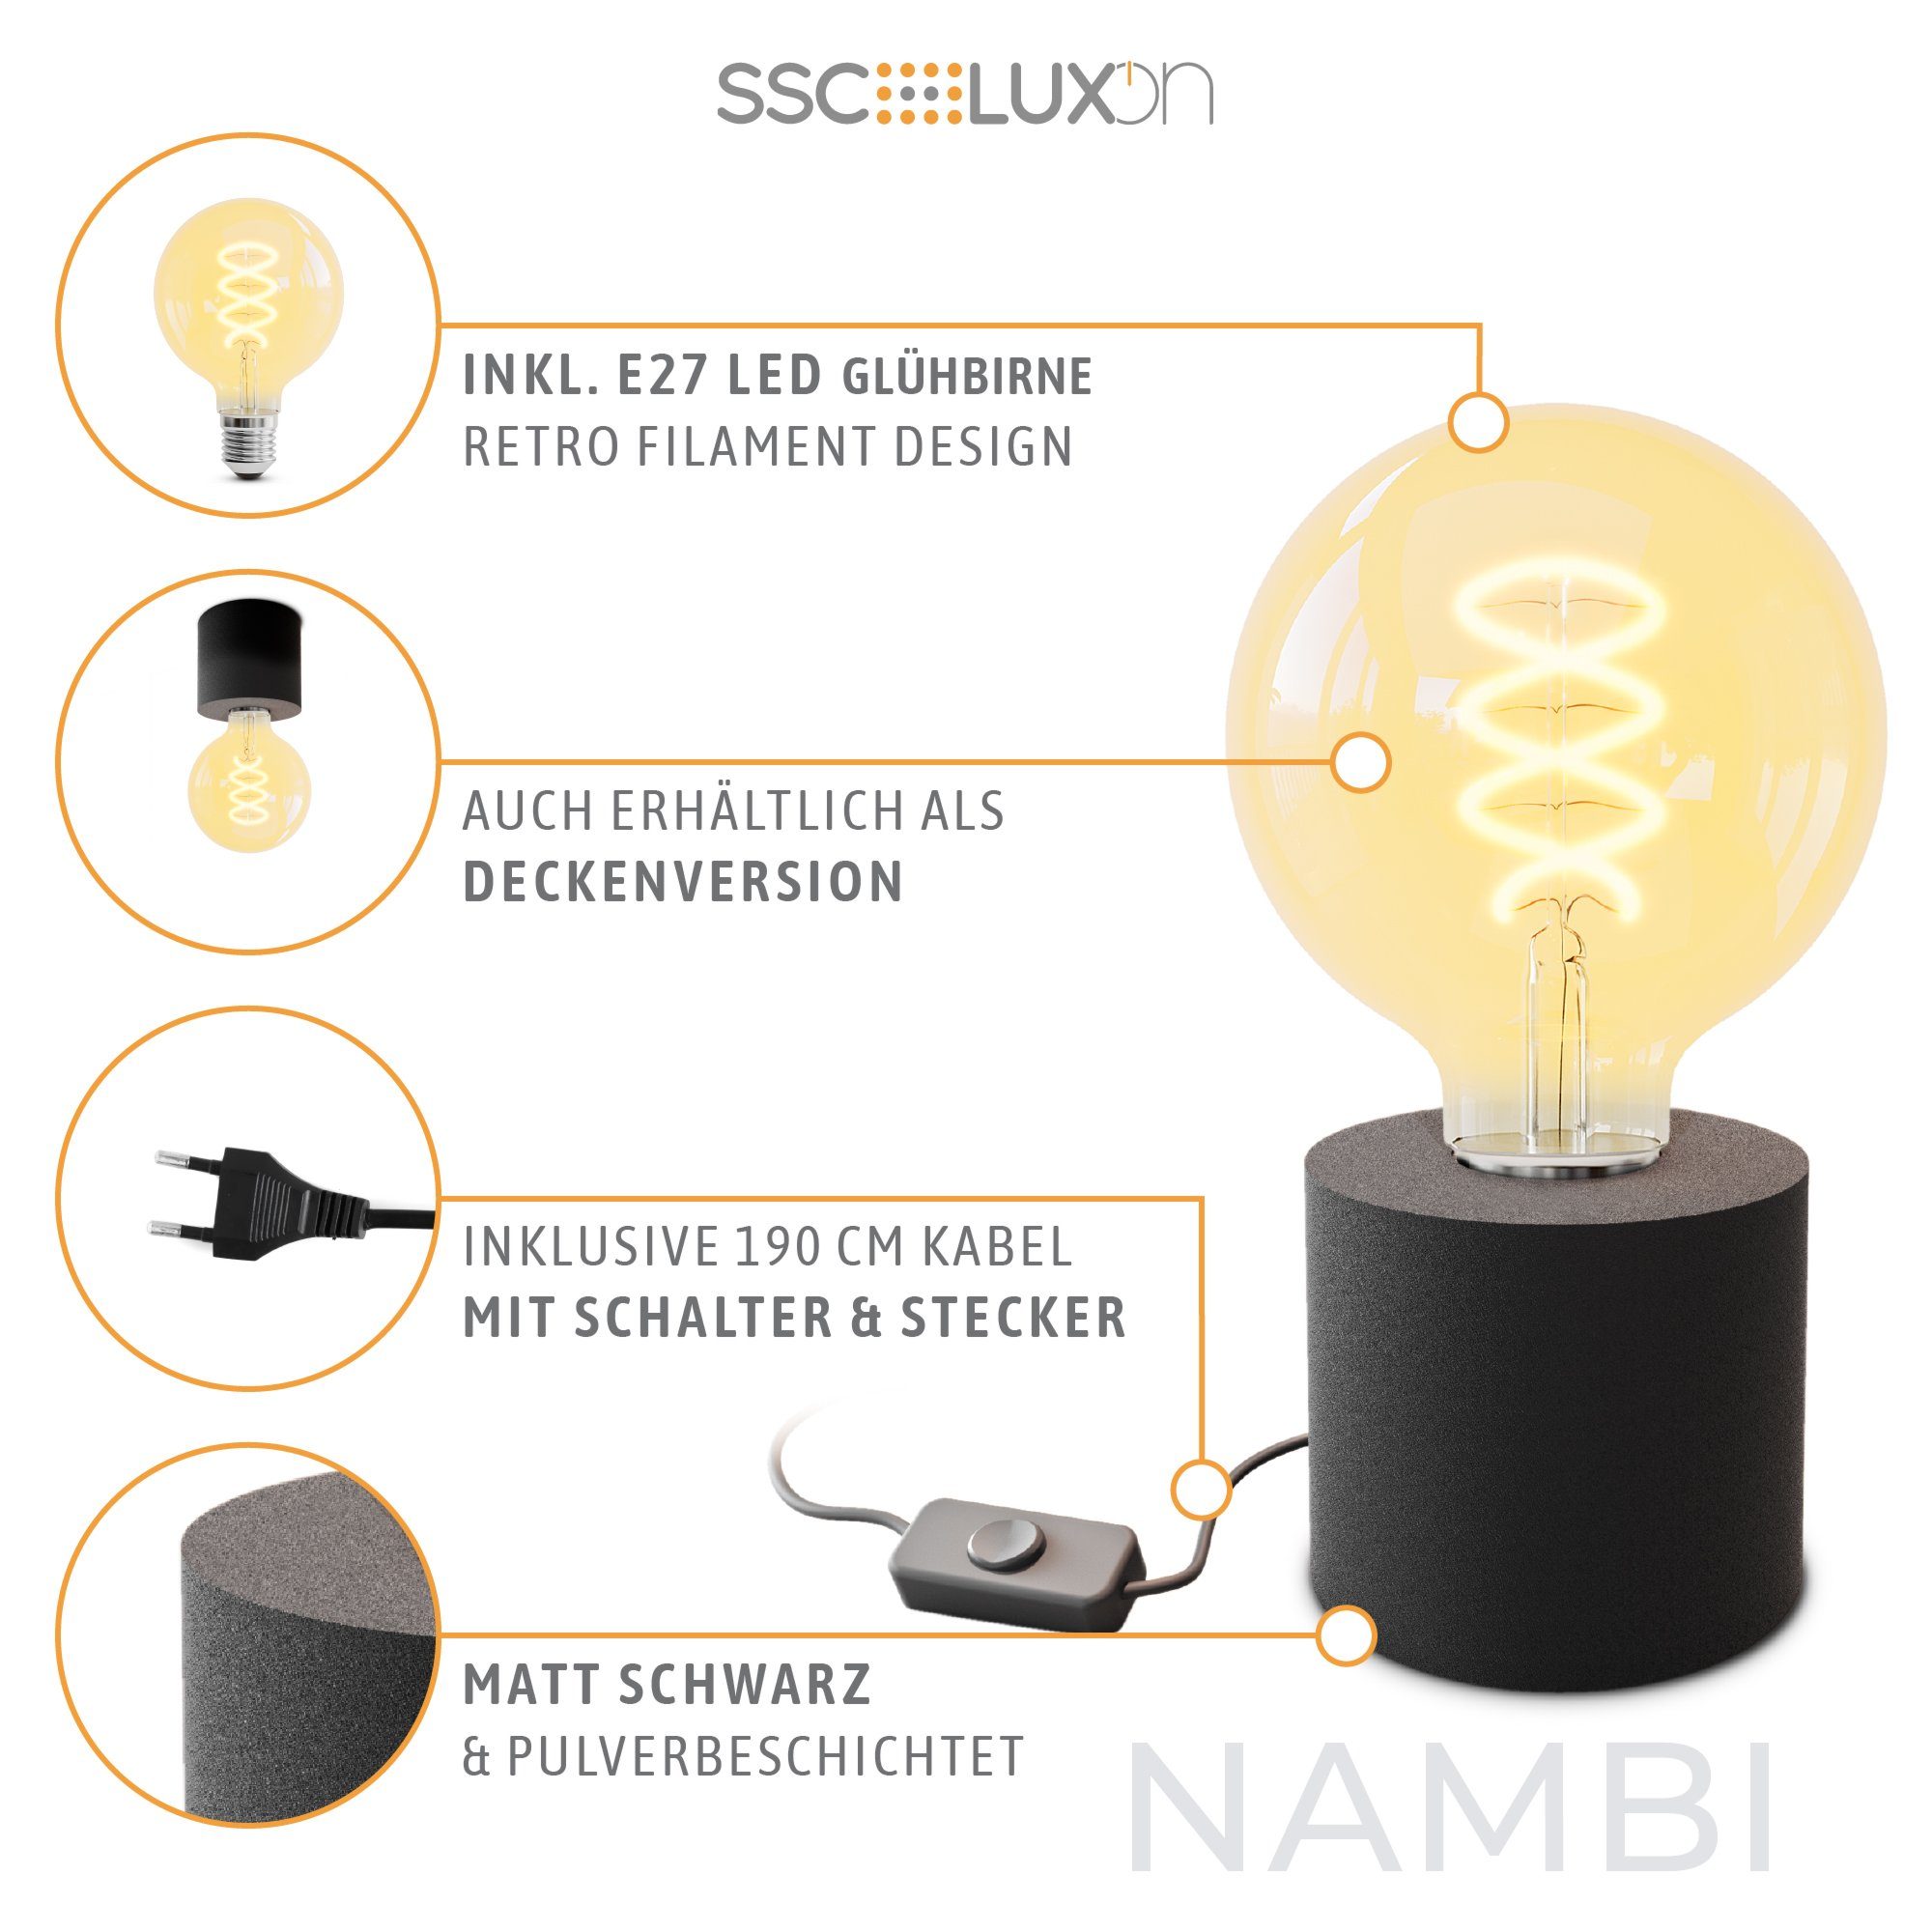 E27 mit Tischlampe & Warmweiß Steckerkabel Globe, SSC-LUXon Wand- NAMBI LED mit LED Extra schwarz Bilderleuchte